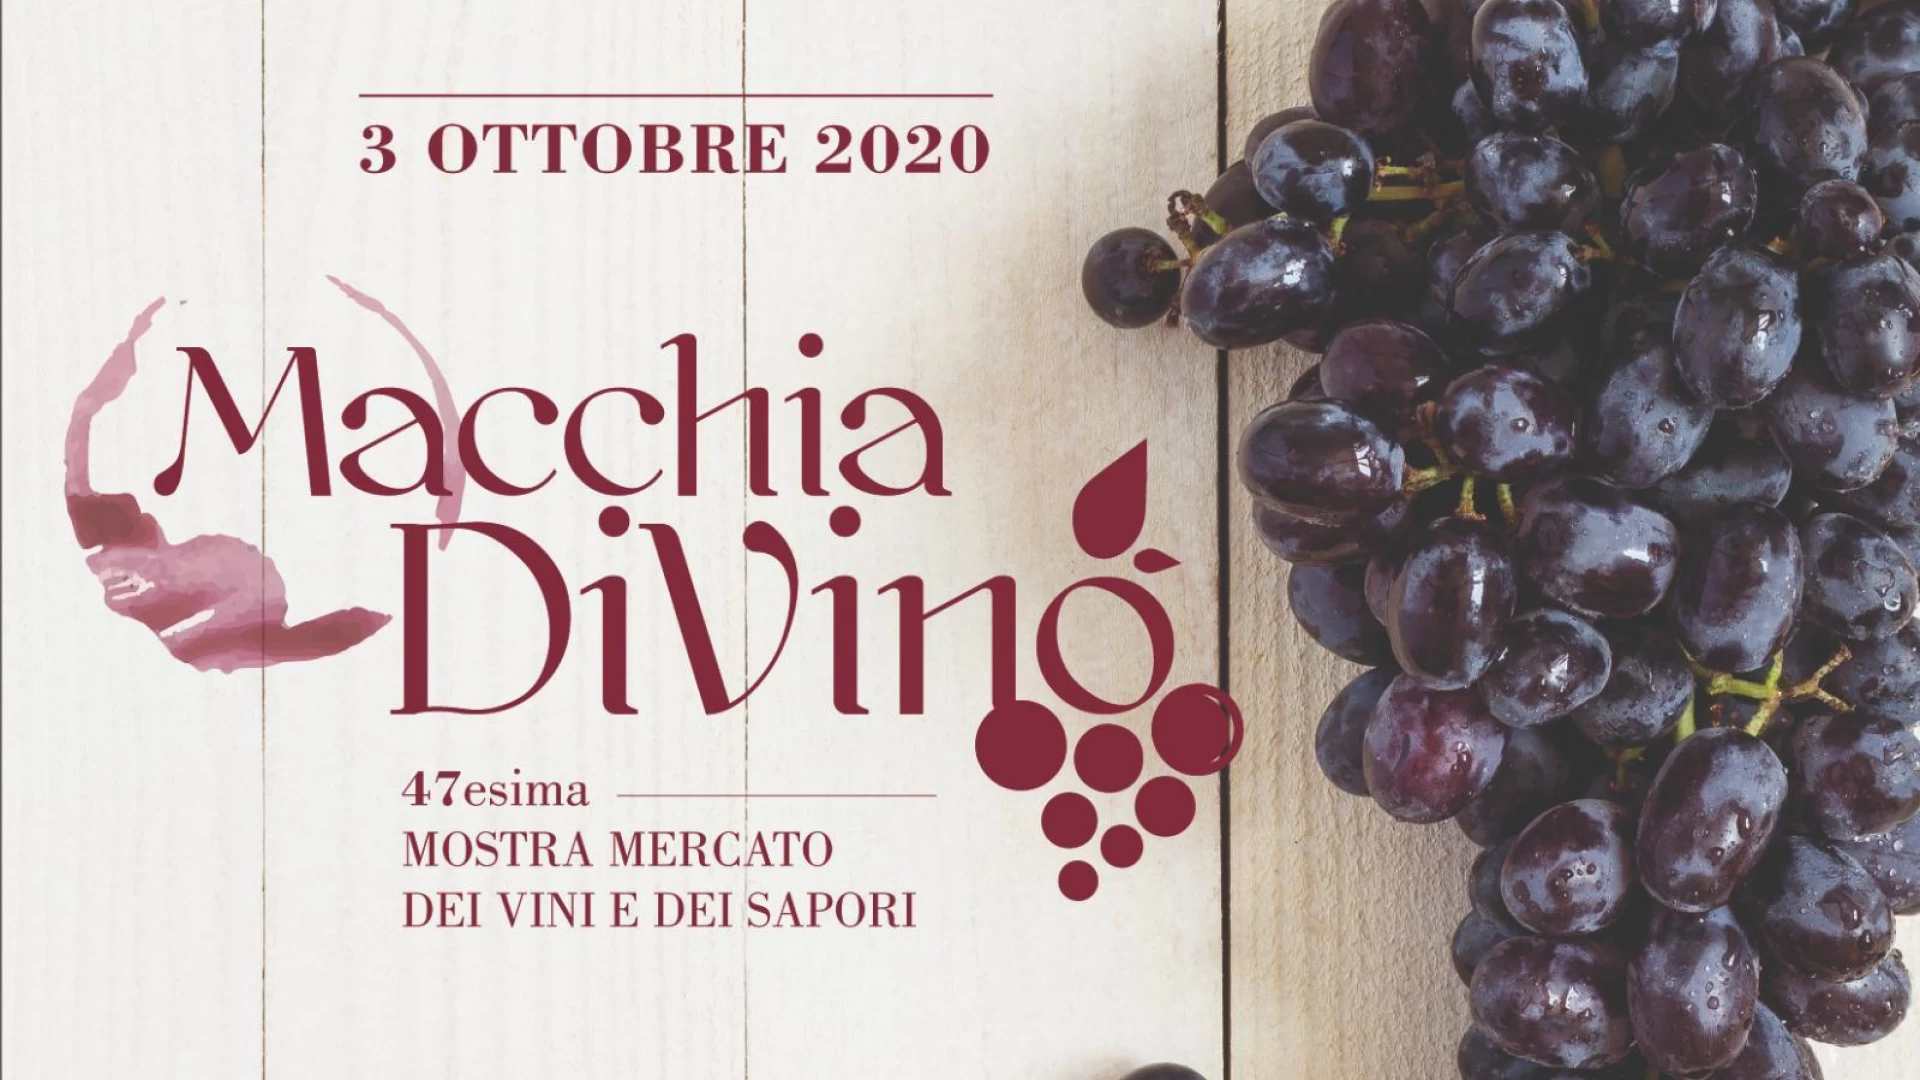 Macchia d’Isernia: ad ottobre la 47°esima edizione della mostra mercato del vino e dei sapori